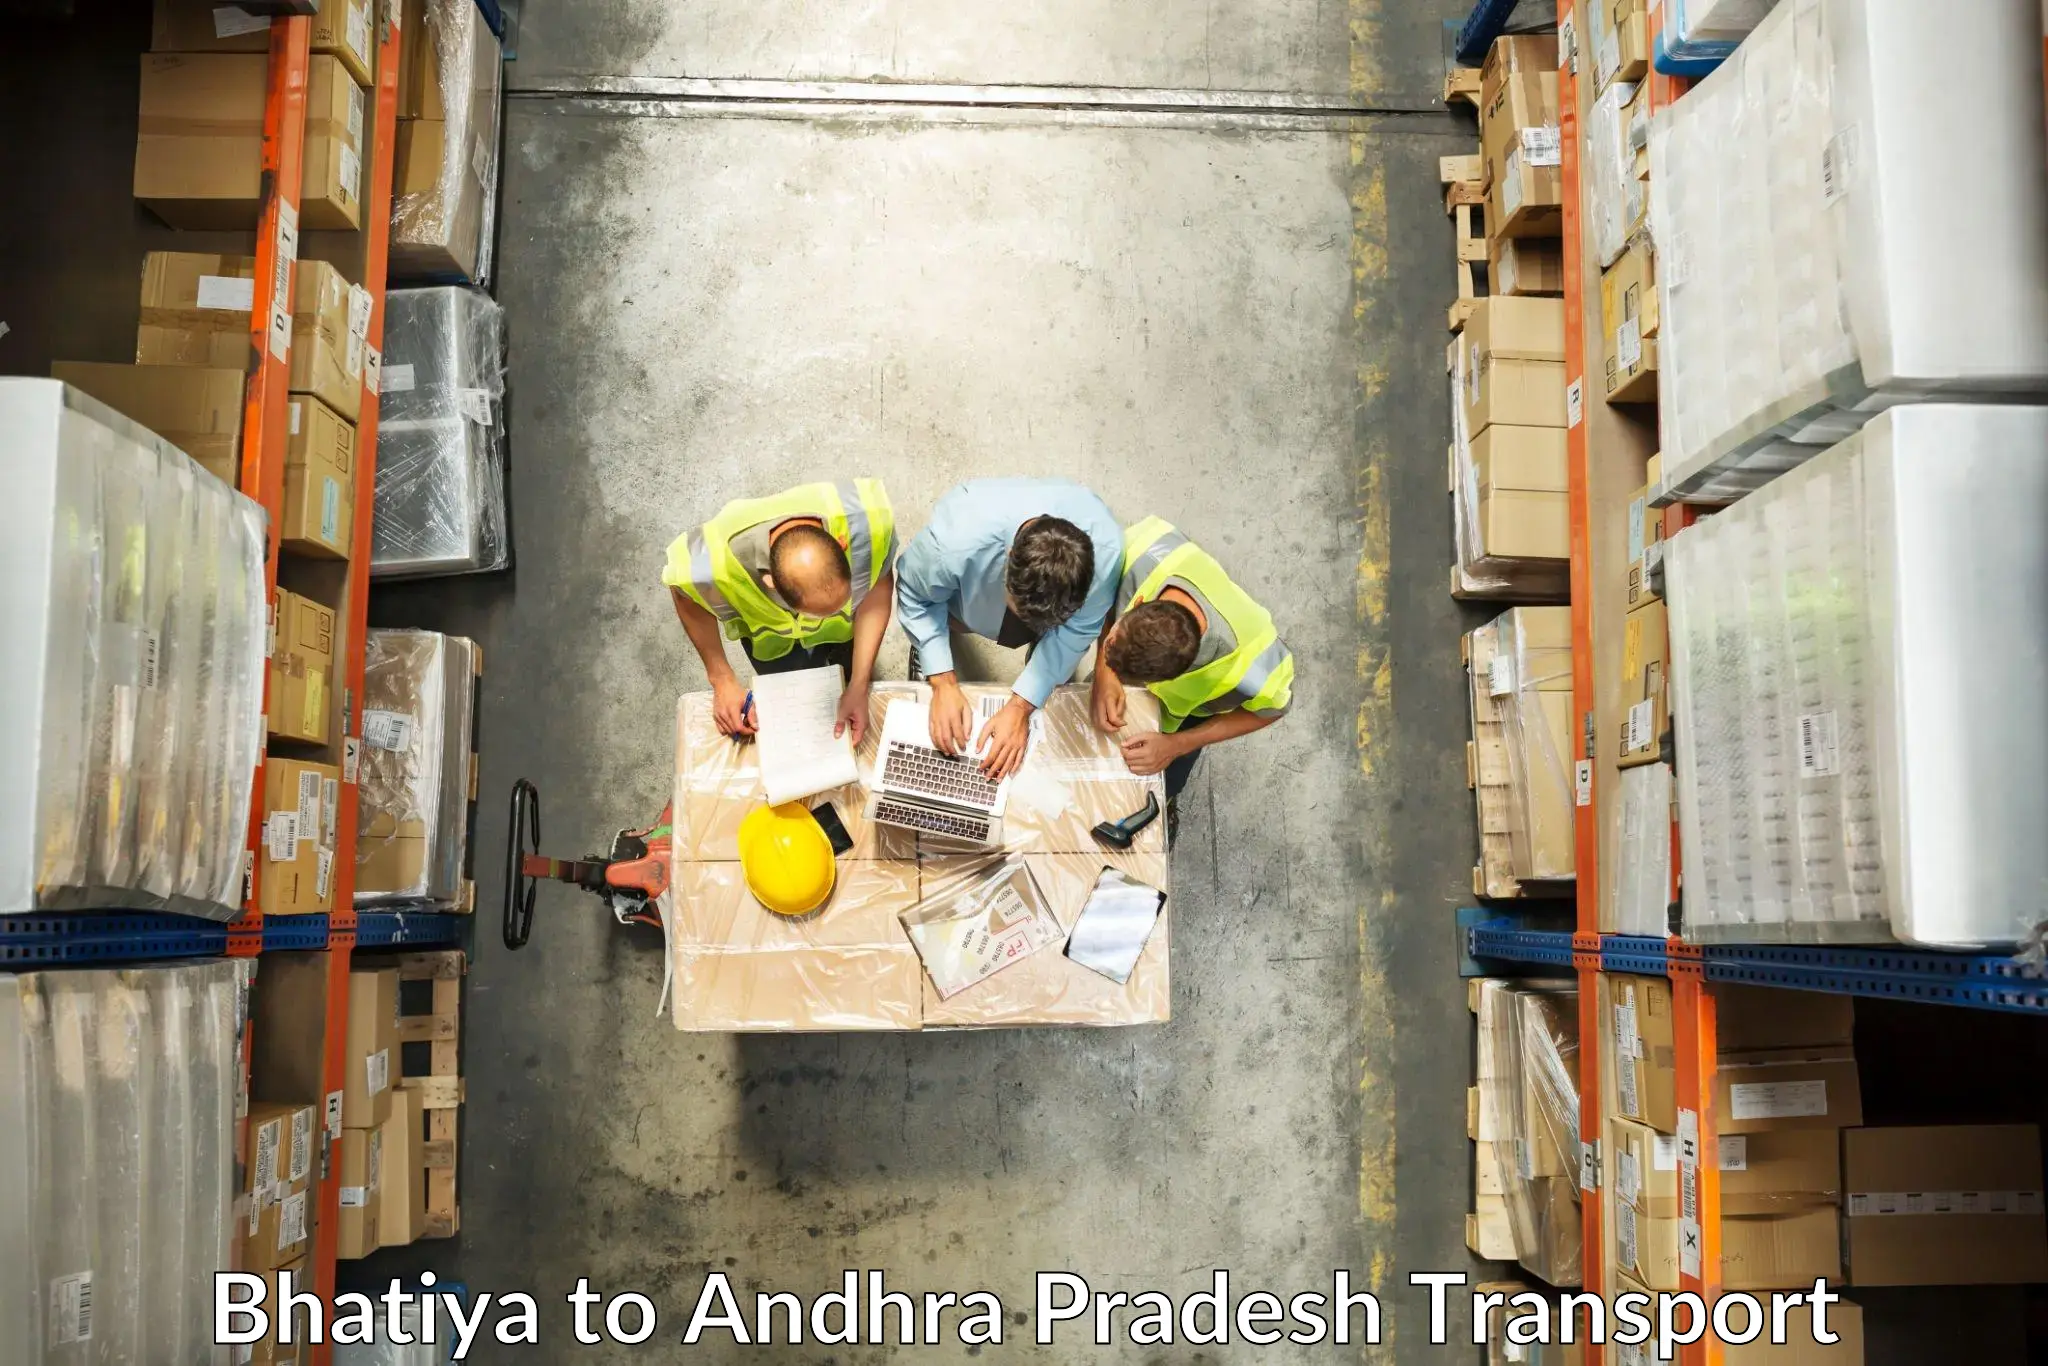 Truck transport companies in India Bhatiya to Kandukur